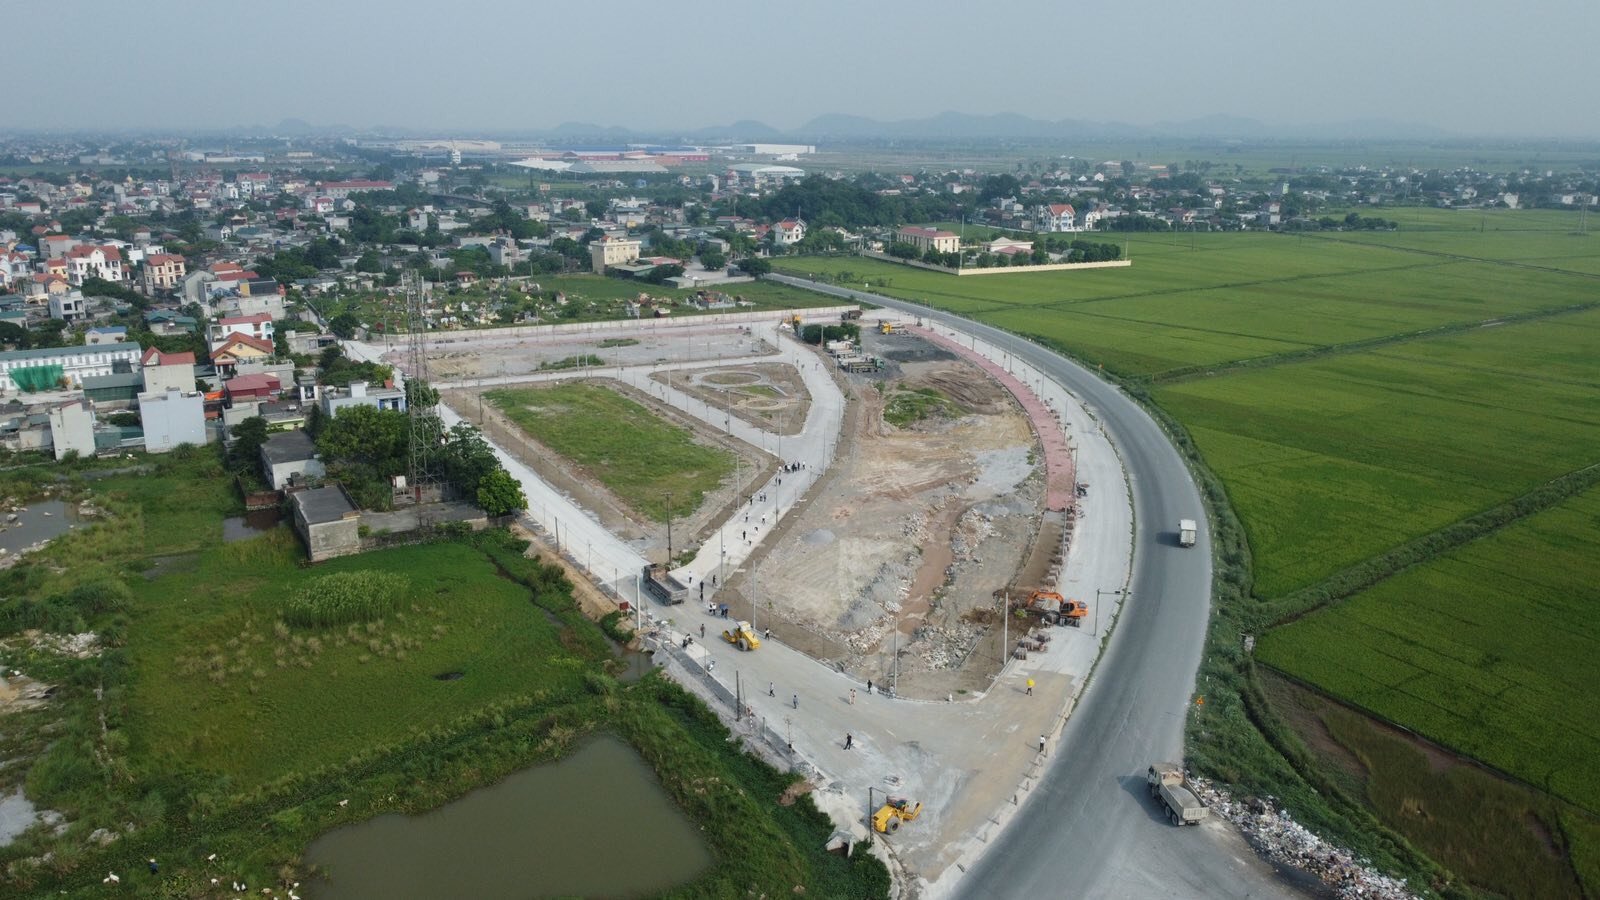 Ra hàng dự án đất nền 1/500 Thanh Liêm Hà Nam. Giá đầu tư chỉ từ 1,3 tỷ. Nằm ở lõi thủ phủ KCN 6